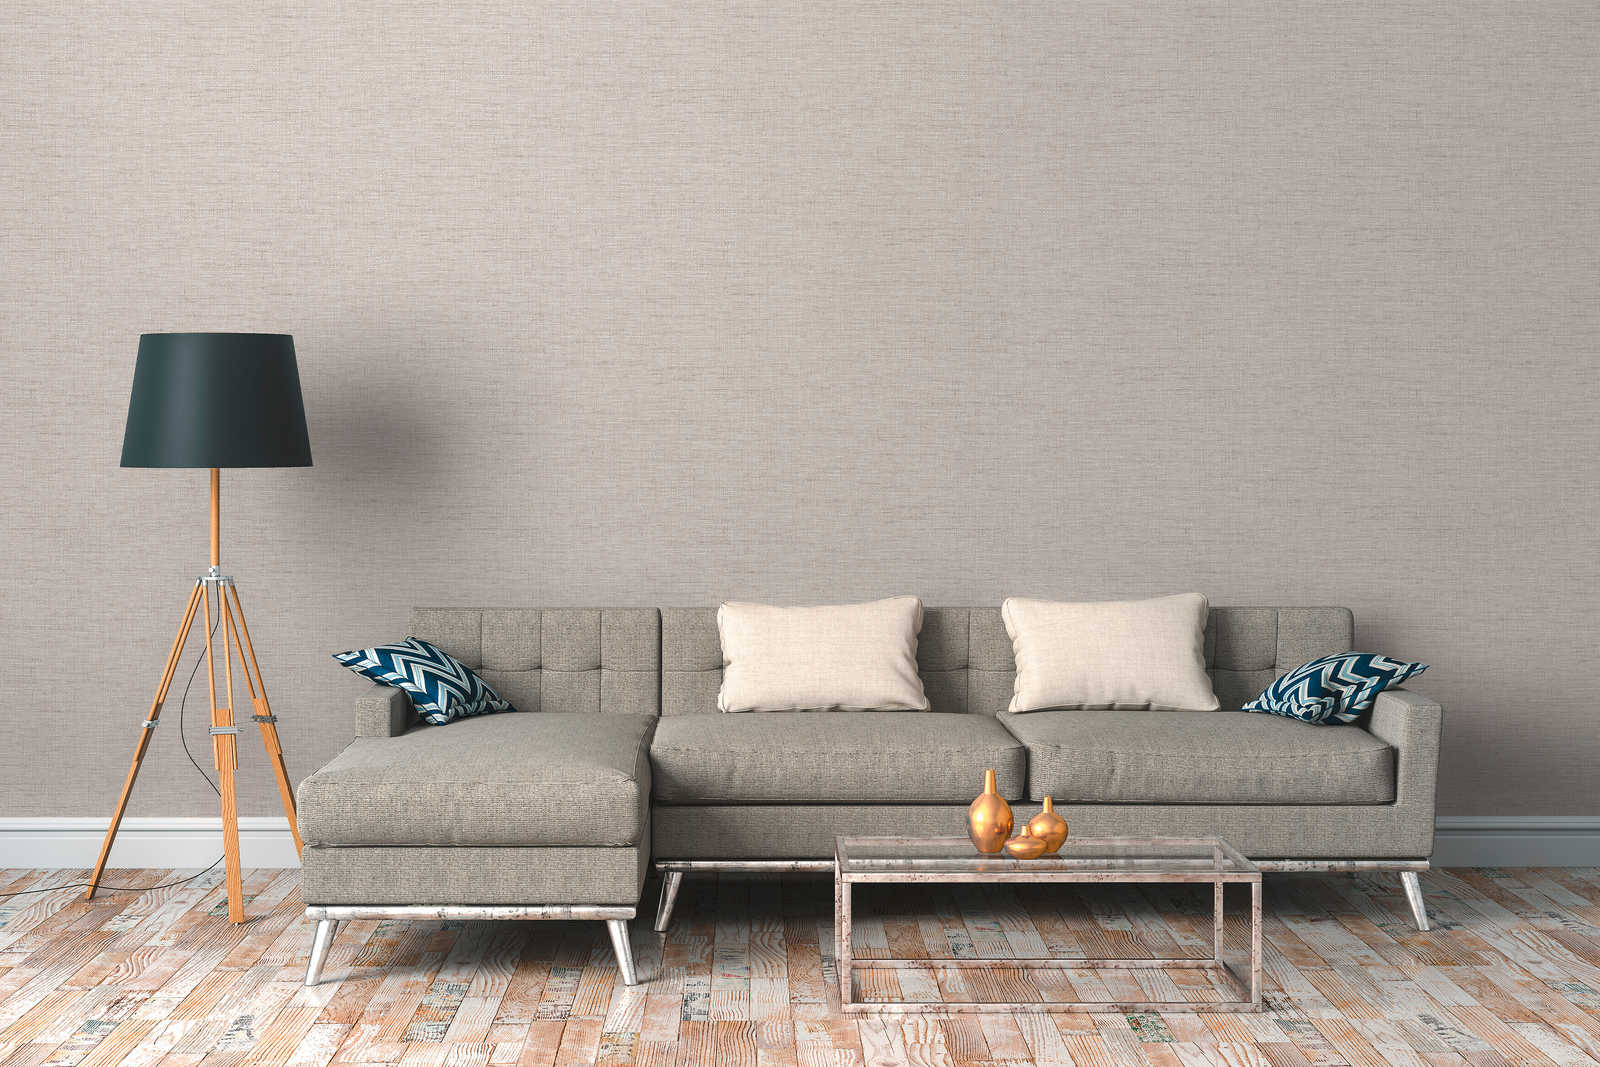             Vliesbehang ethno design grijs met raffia patroon
        